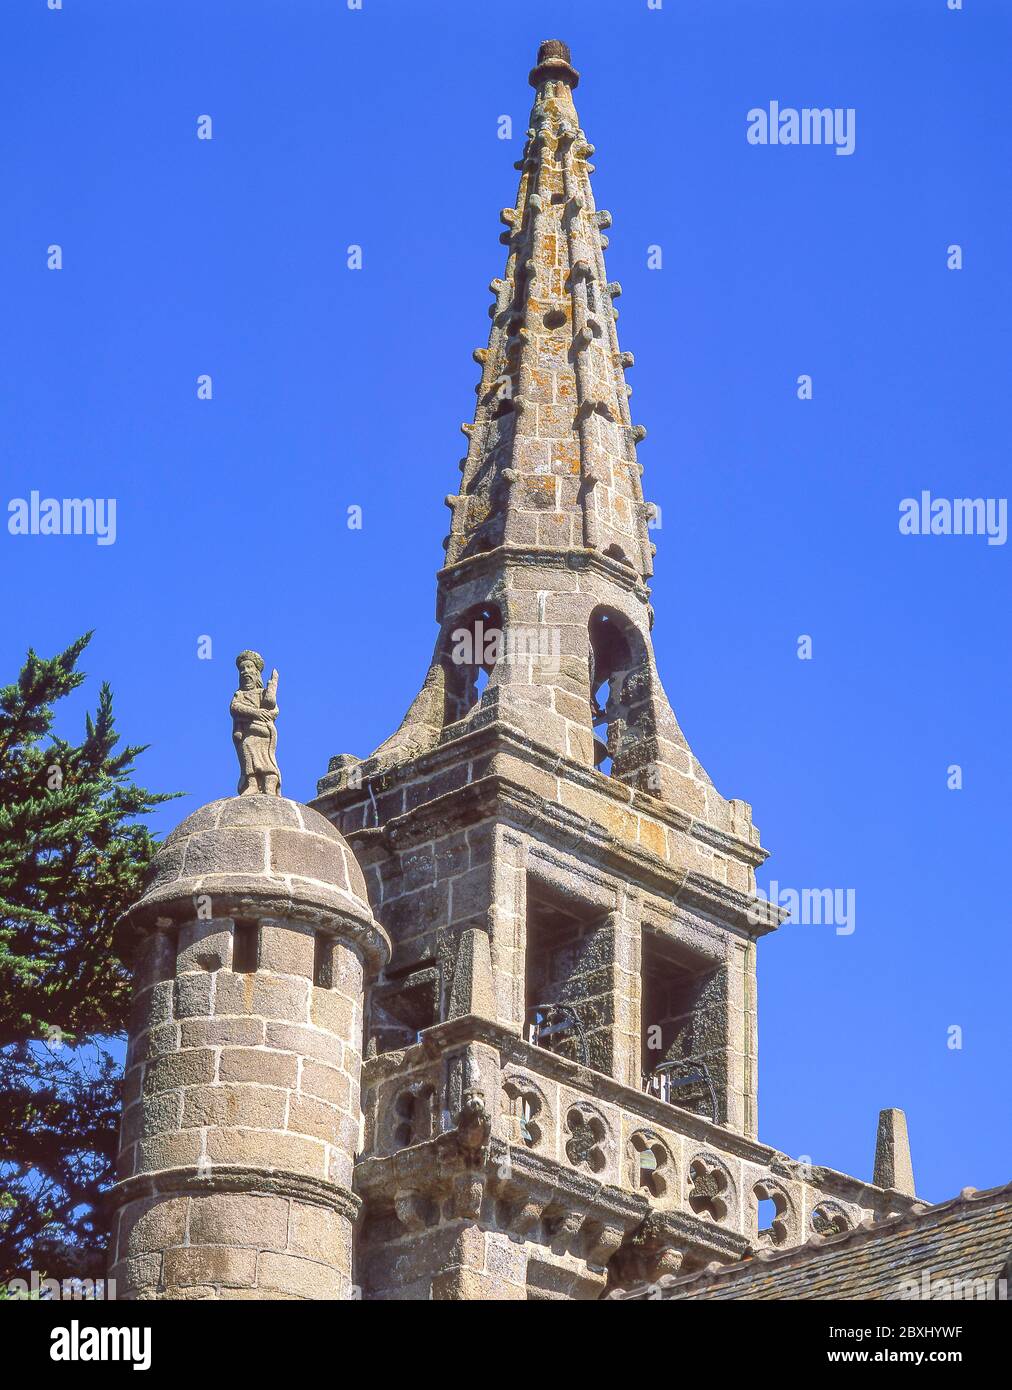 Église Saint-Jacques de Locquirec, Rue de l'Église, Locquirec, Finistère, Brittany, France Stock Photo